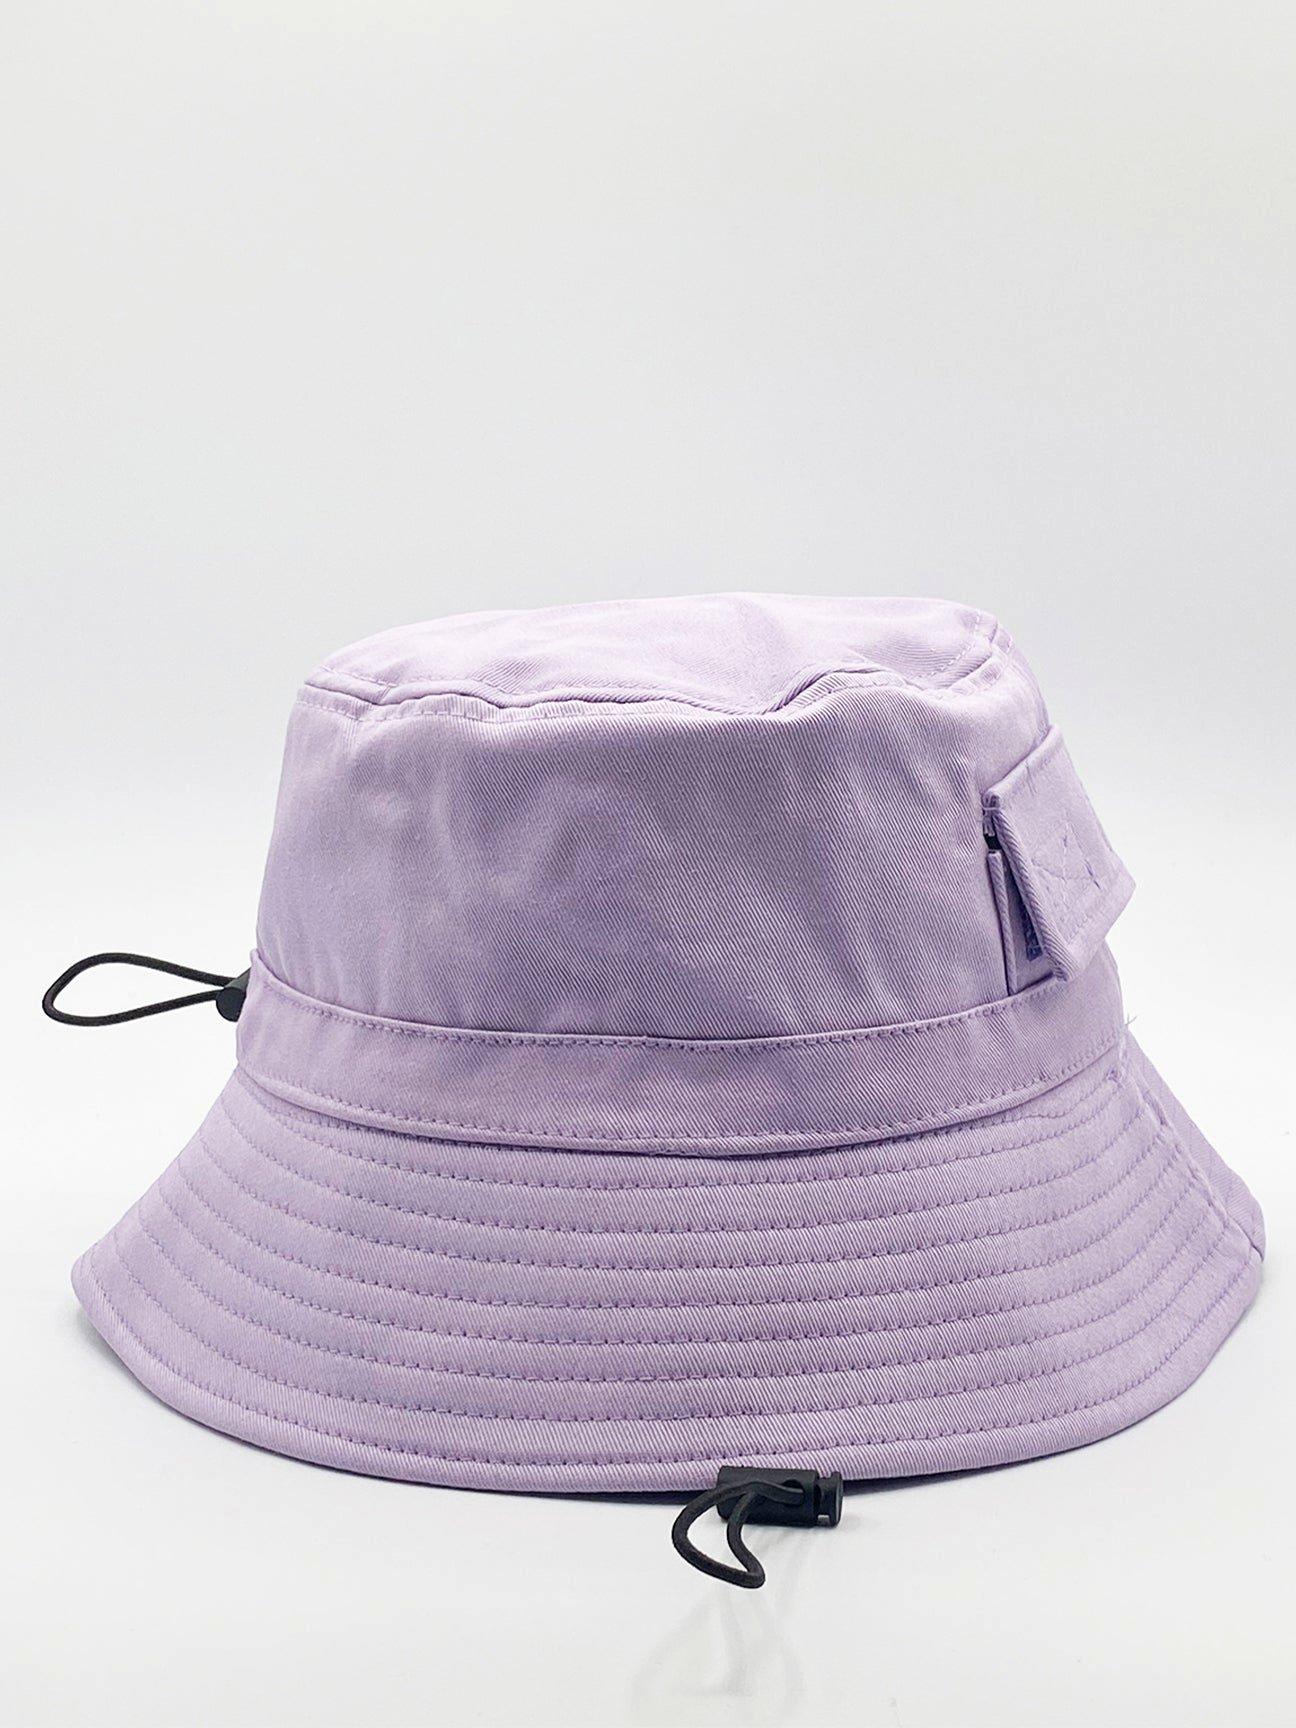 boohoo Men's Fabric Interest Denim Bucket Hat